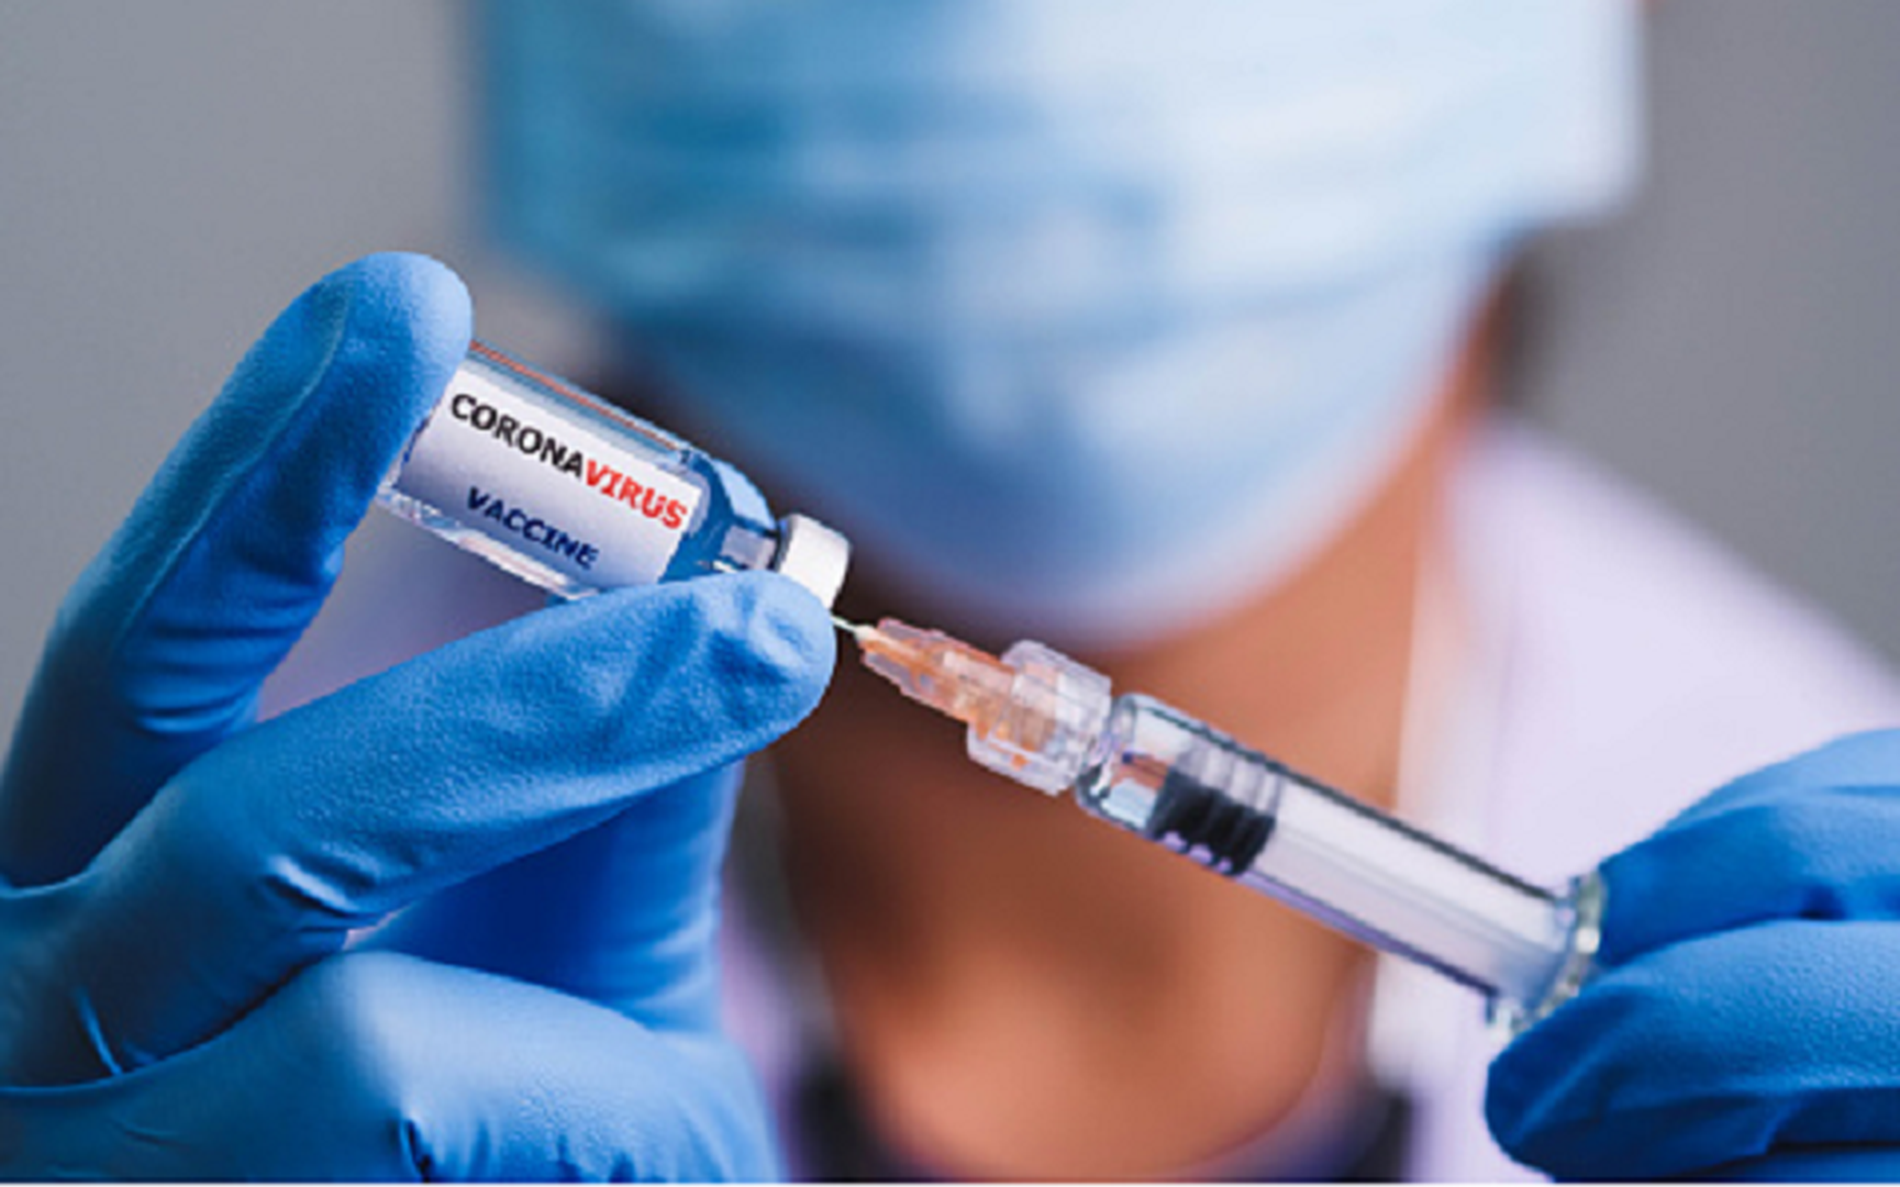 CDC Mỹ công bố nghiên cứu về hiệu quả bảo vệ của mũi tăng cường vaccine COVID-19